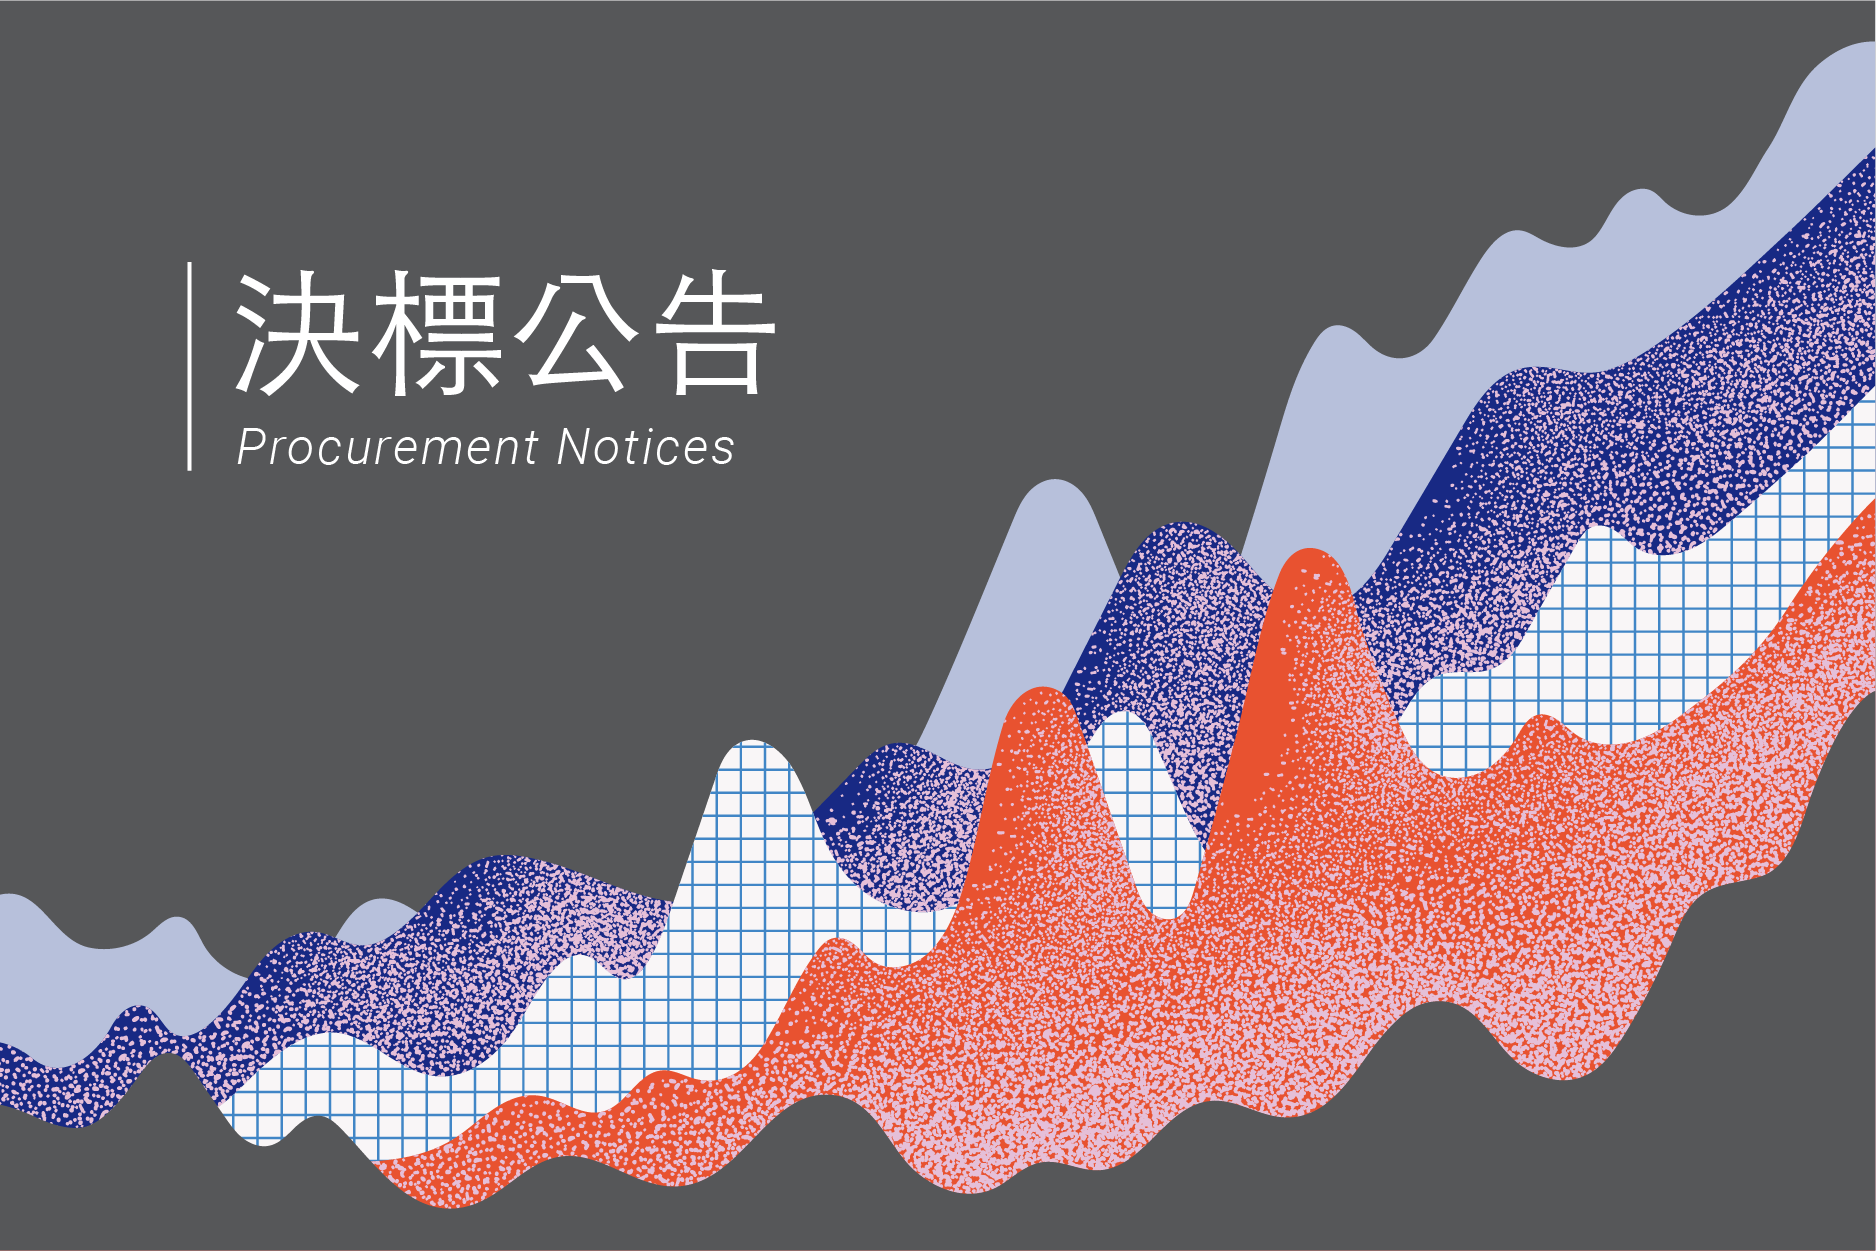 2021年臺灣文化創意產業發展年報編印計畫勞務採購案(決標公告)